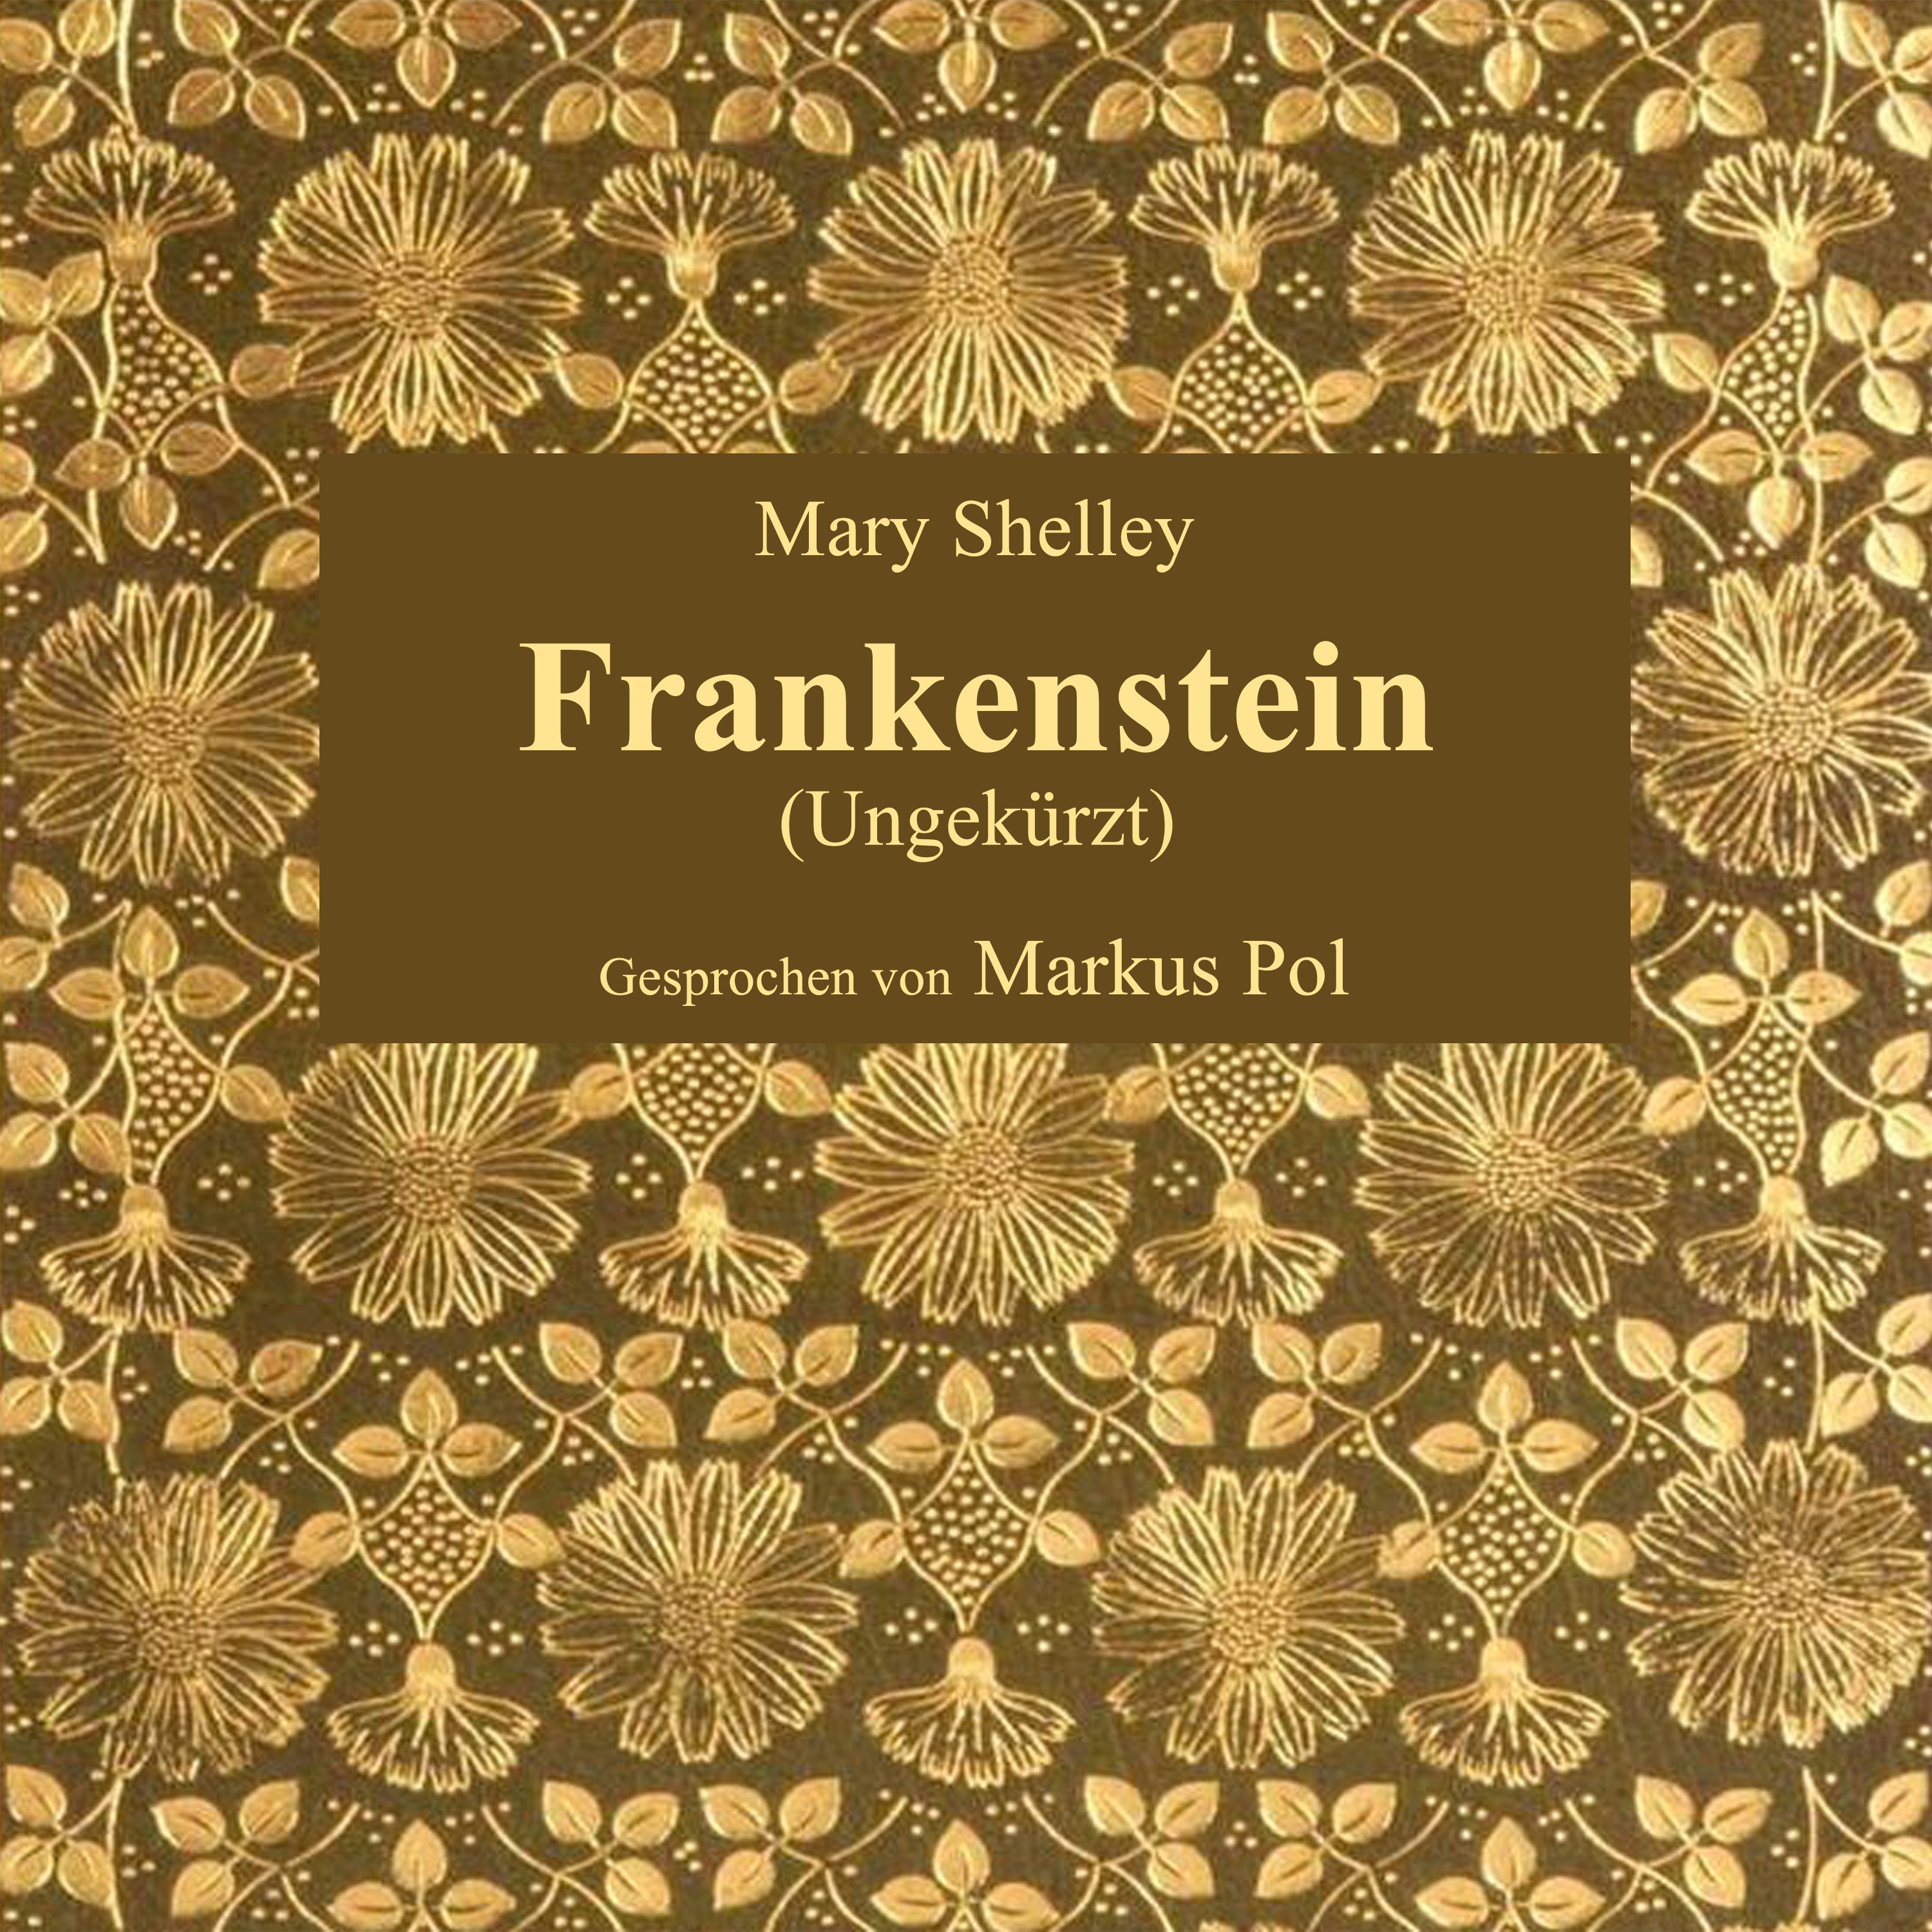 Kapitel 21: Frankenstein (Teil 24)